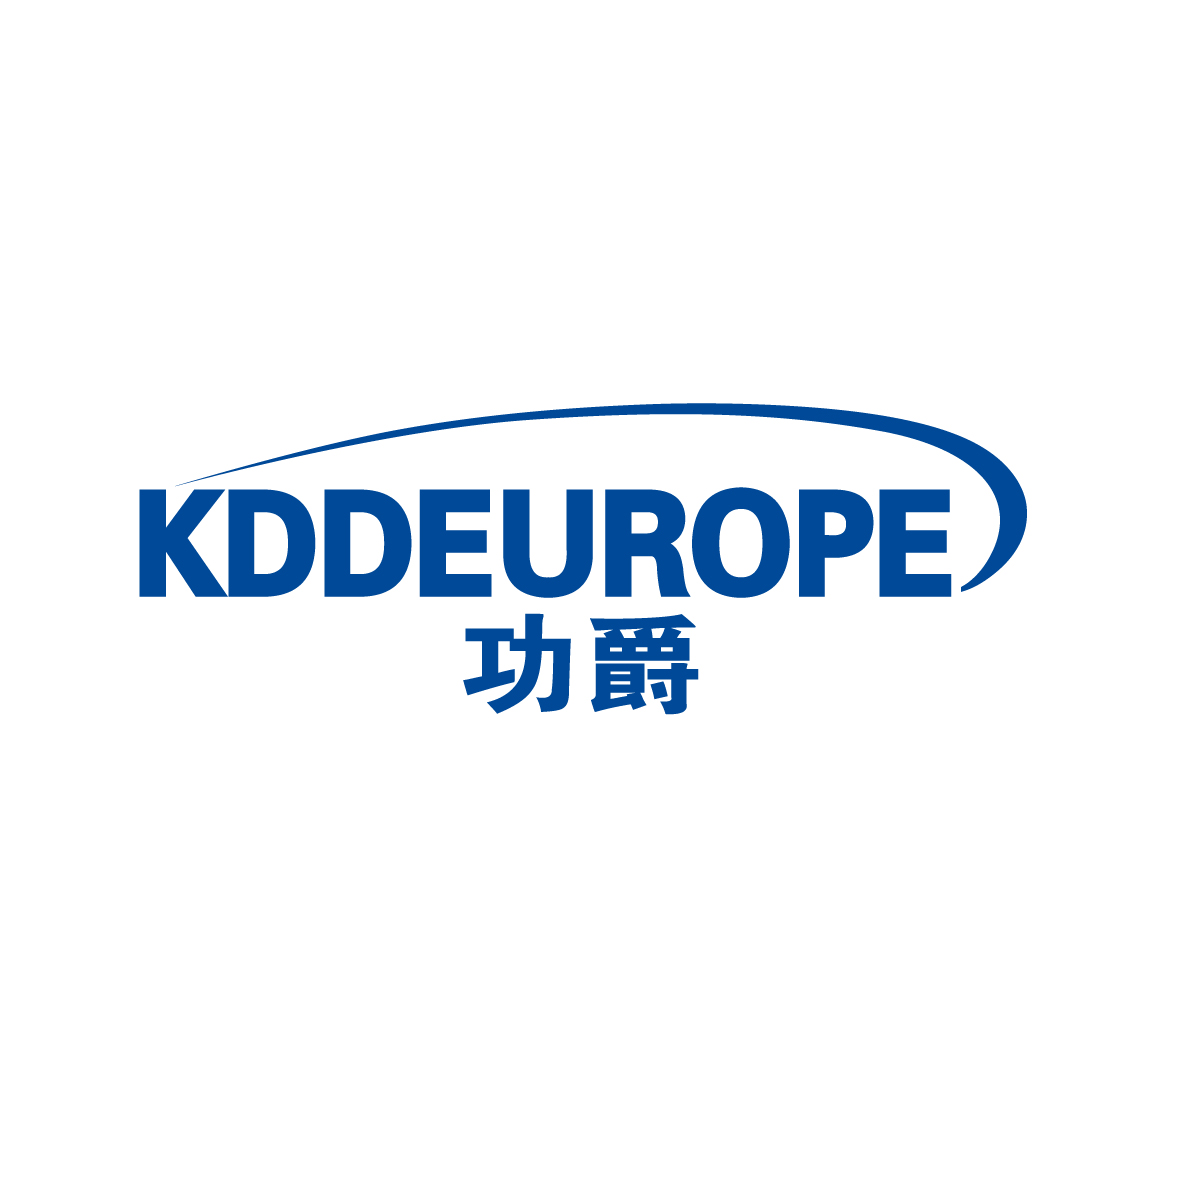 广州市巷陌电子商务商行商标功爵 KDDEUROPE（09类）商标买卖平台报价，上哪个平台最省钱？